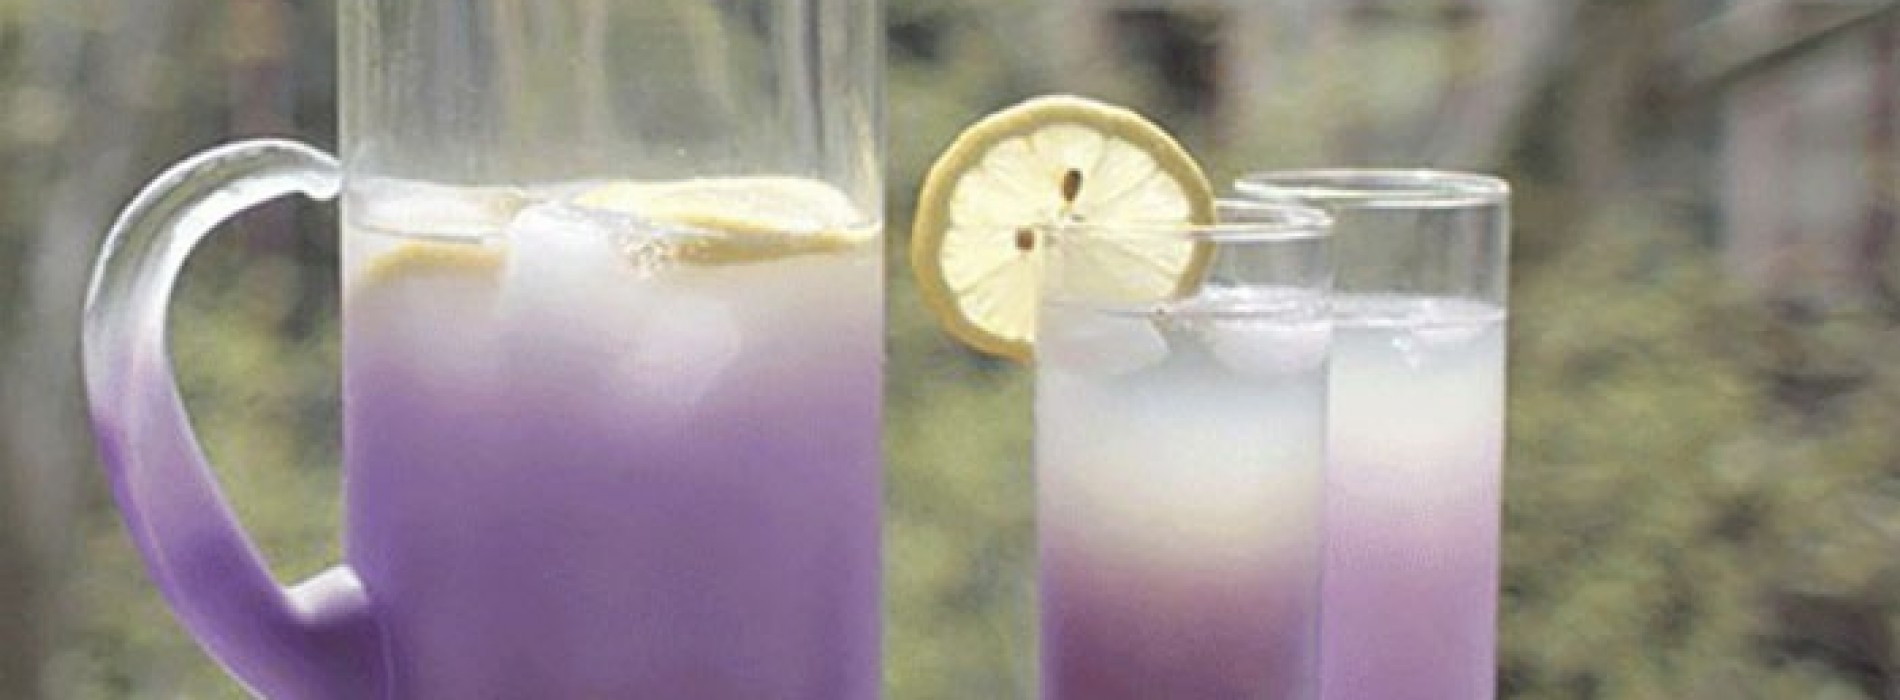 Heb je last van angst of van regelmatige hoofdpijn? Met deze speciale limonade ben je daar van af!